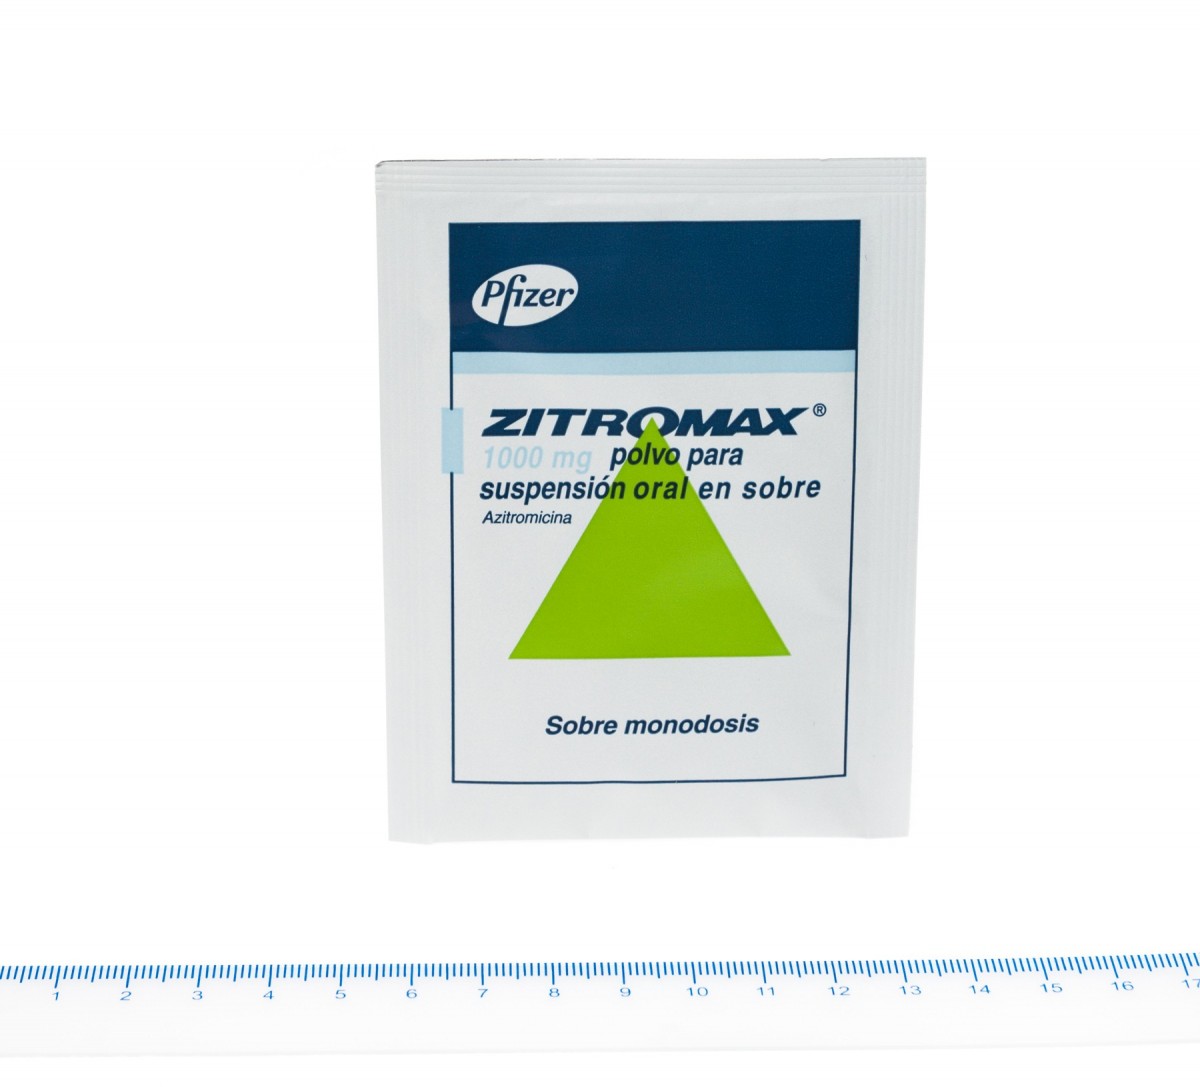 ZITROMAX 1000 mg POLVO PARA SUSPENSION ORAL EN SOBRE, 1 sobre fotografía de la forma farmacéutica.